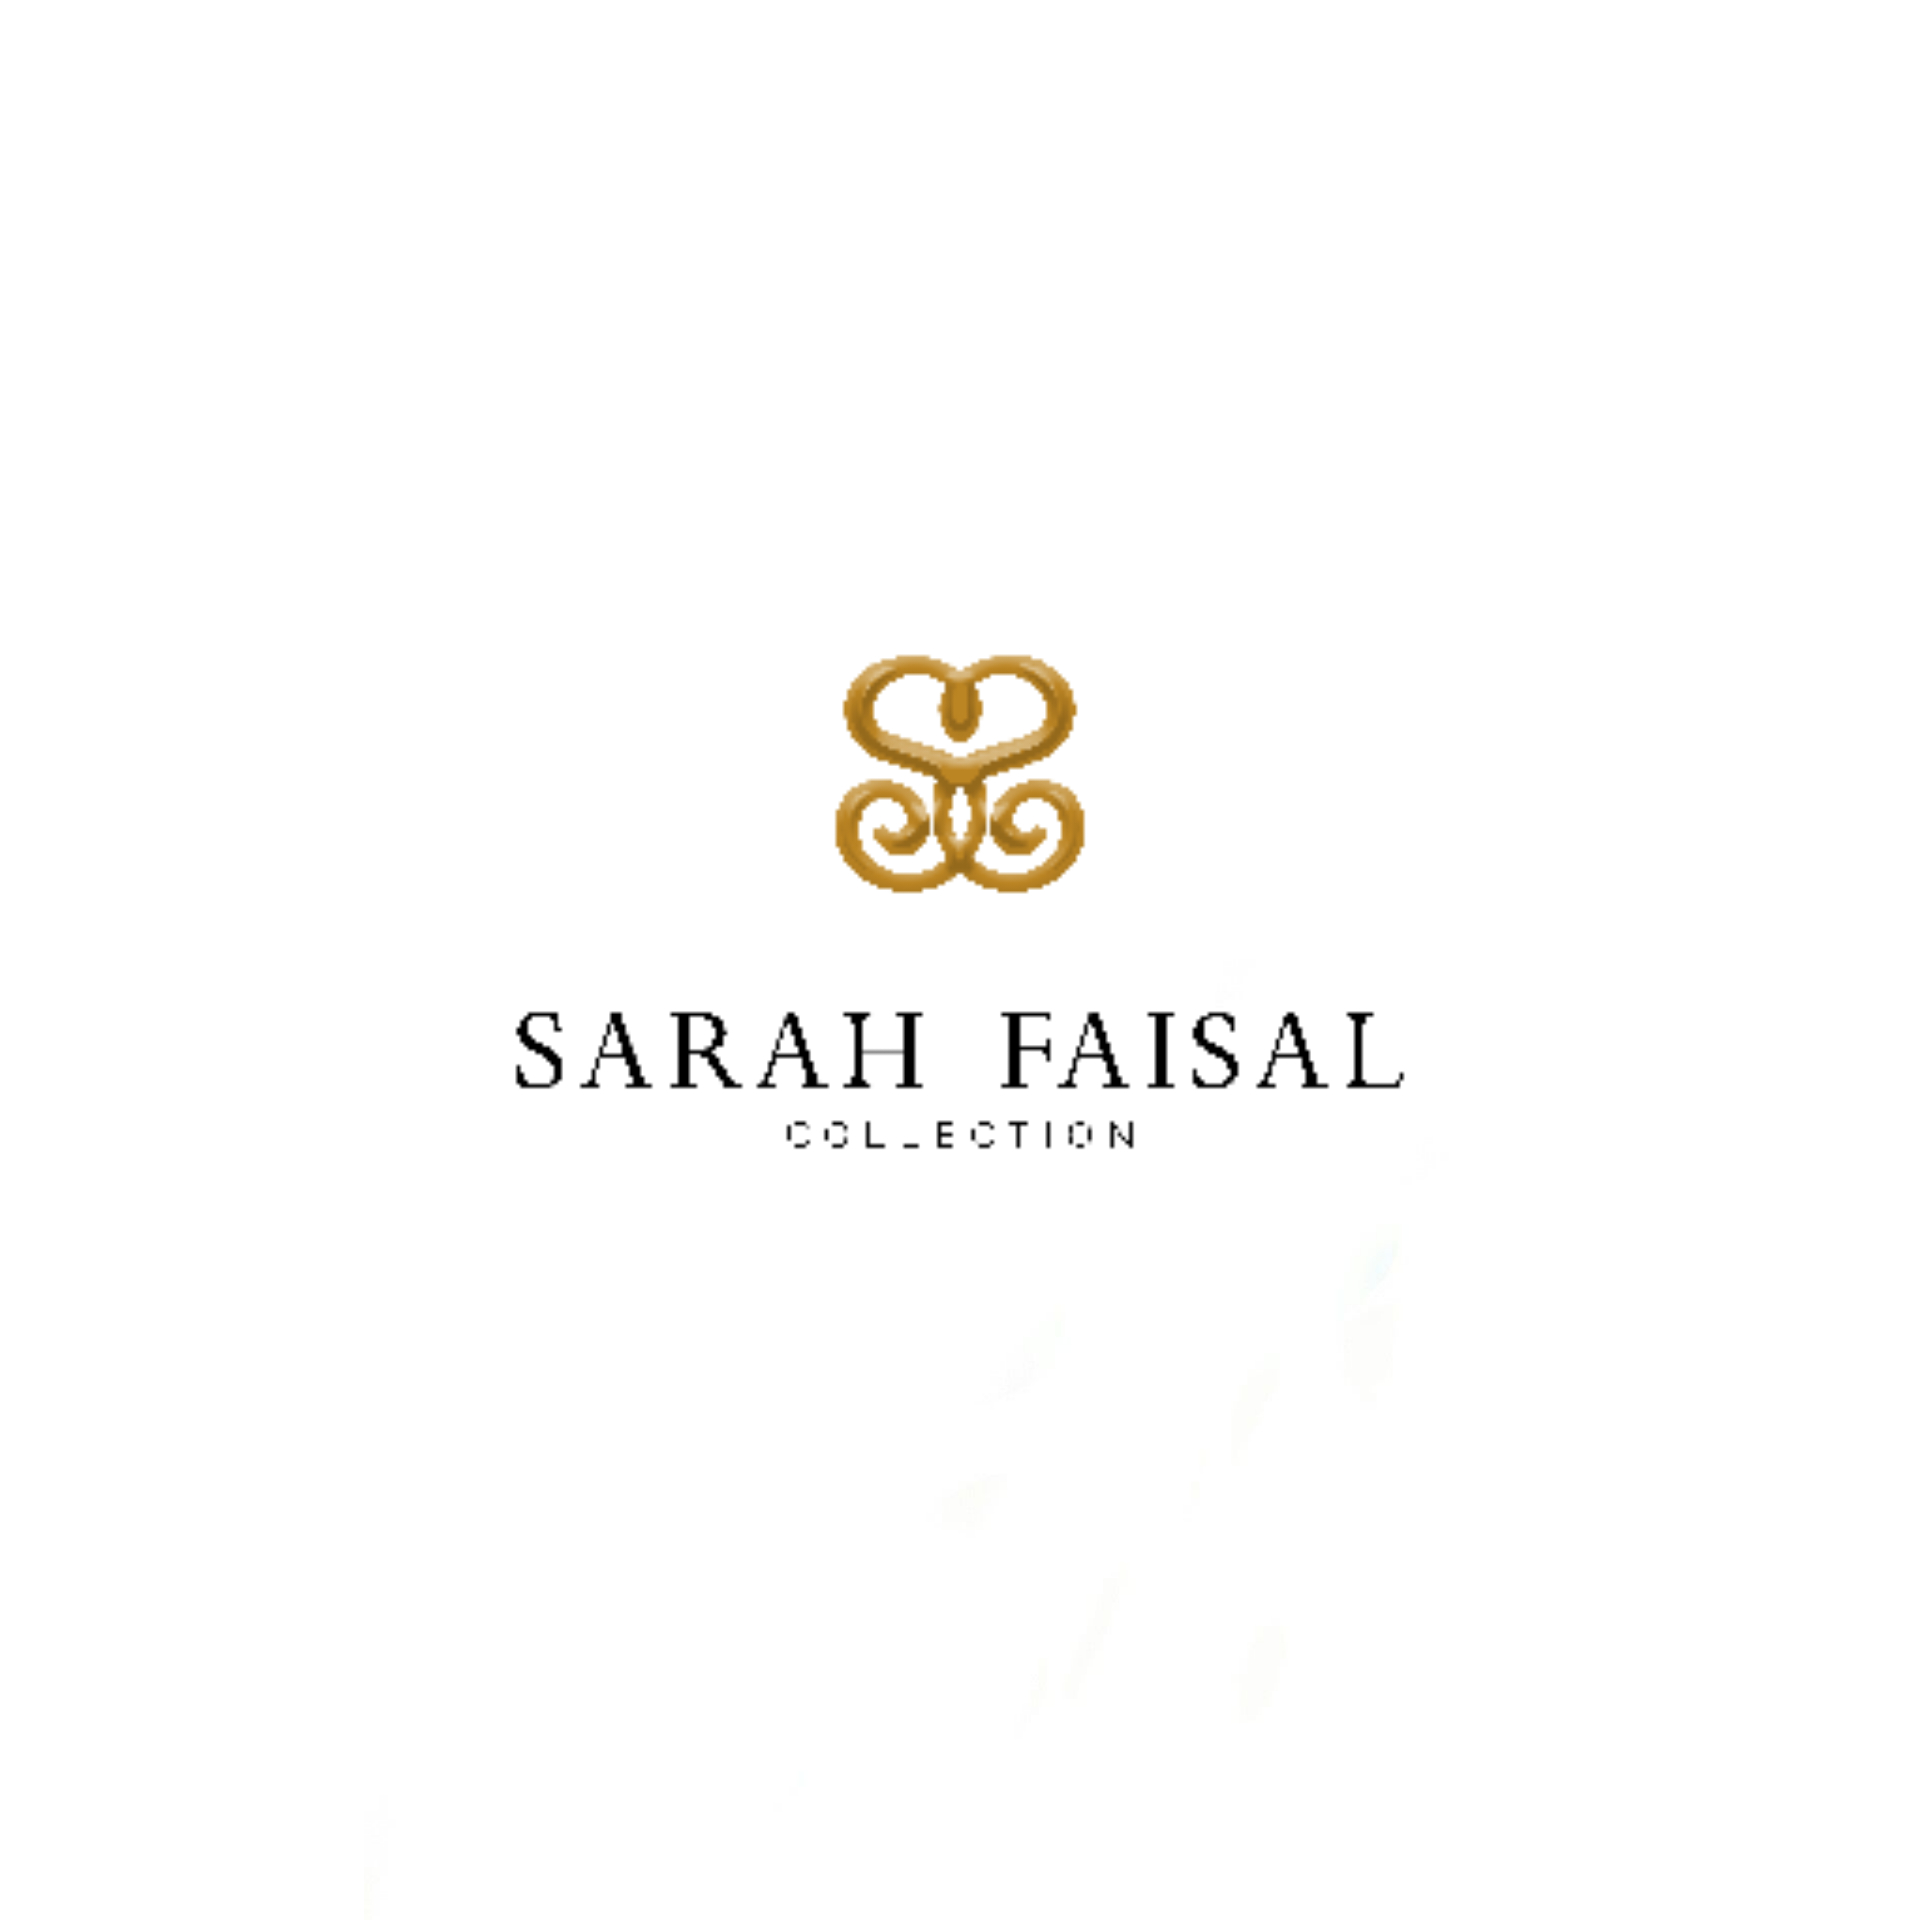 Sarah Faisal